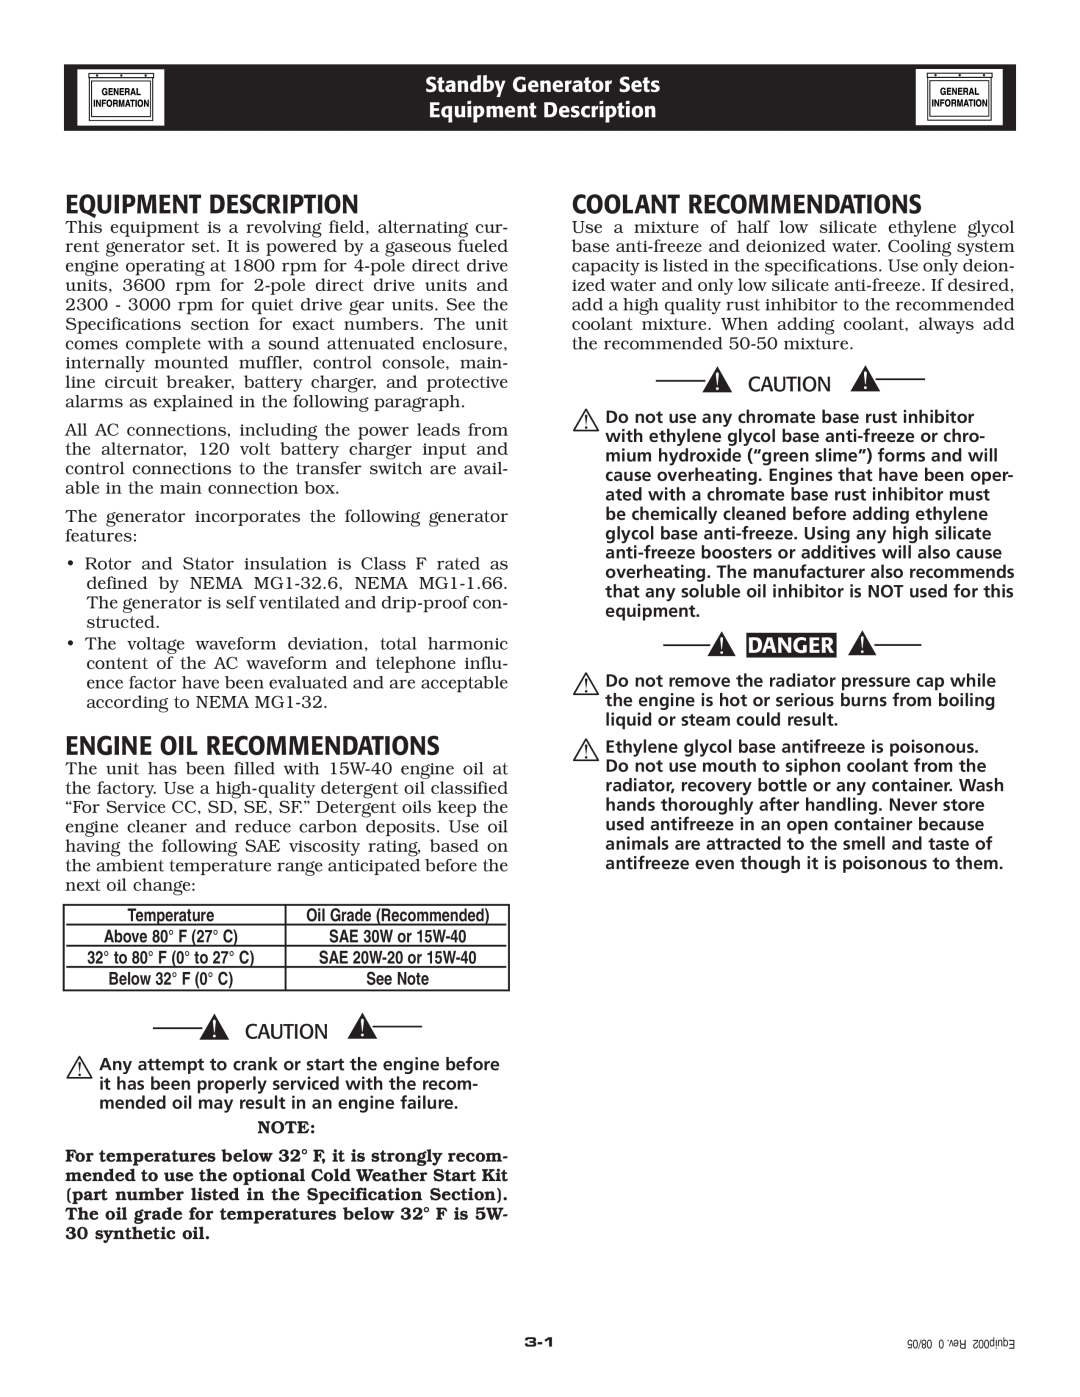 Generac Power Systems 005325-0 Equipment Description, Engine Oil Recommendations, Coolant Recommendations, Danger 